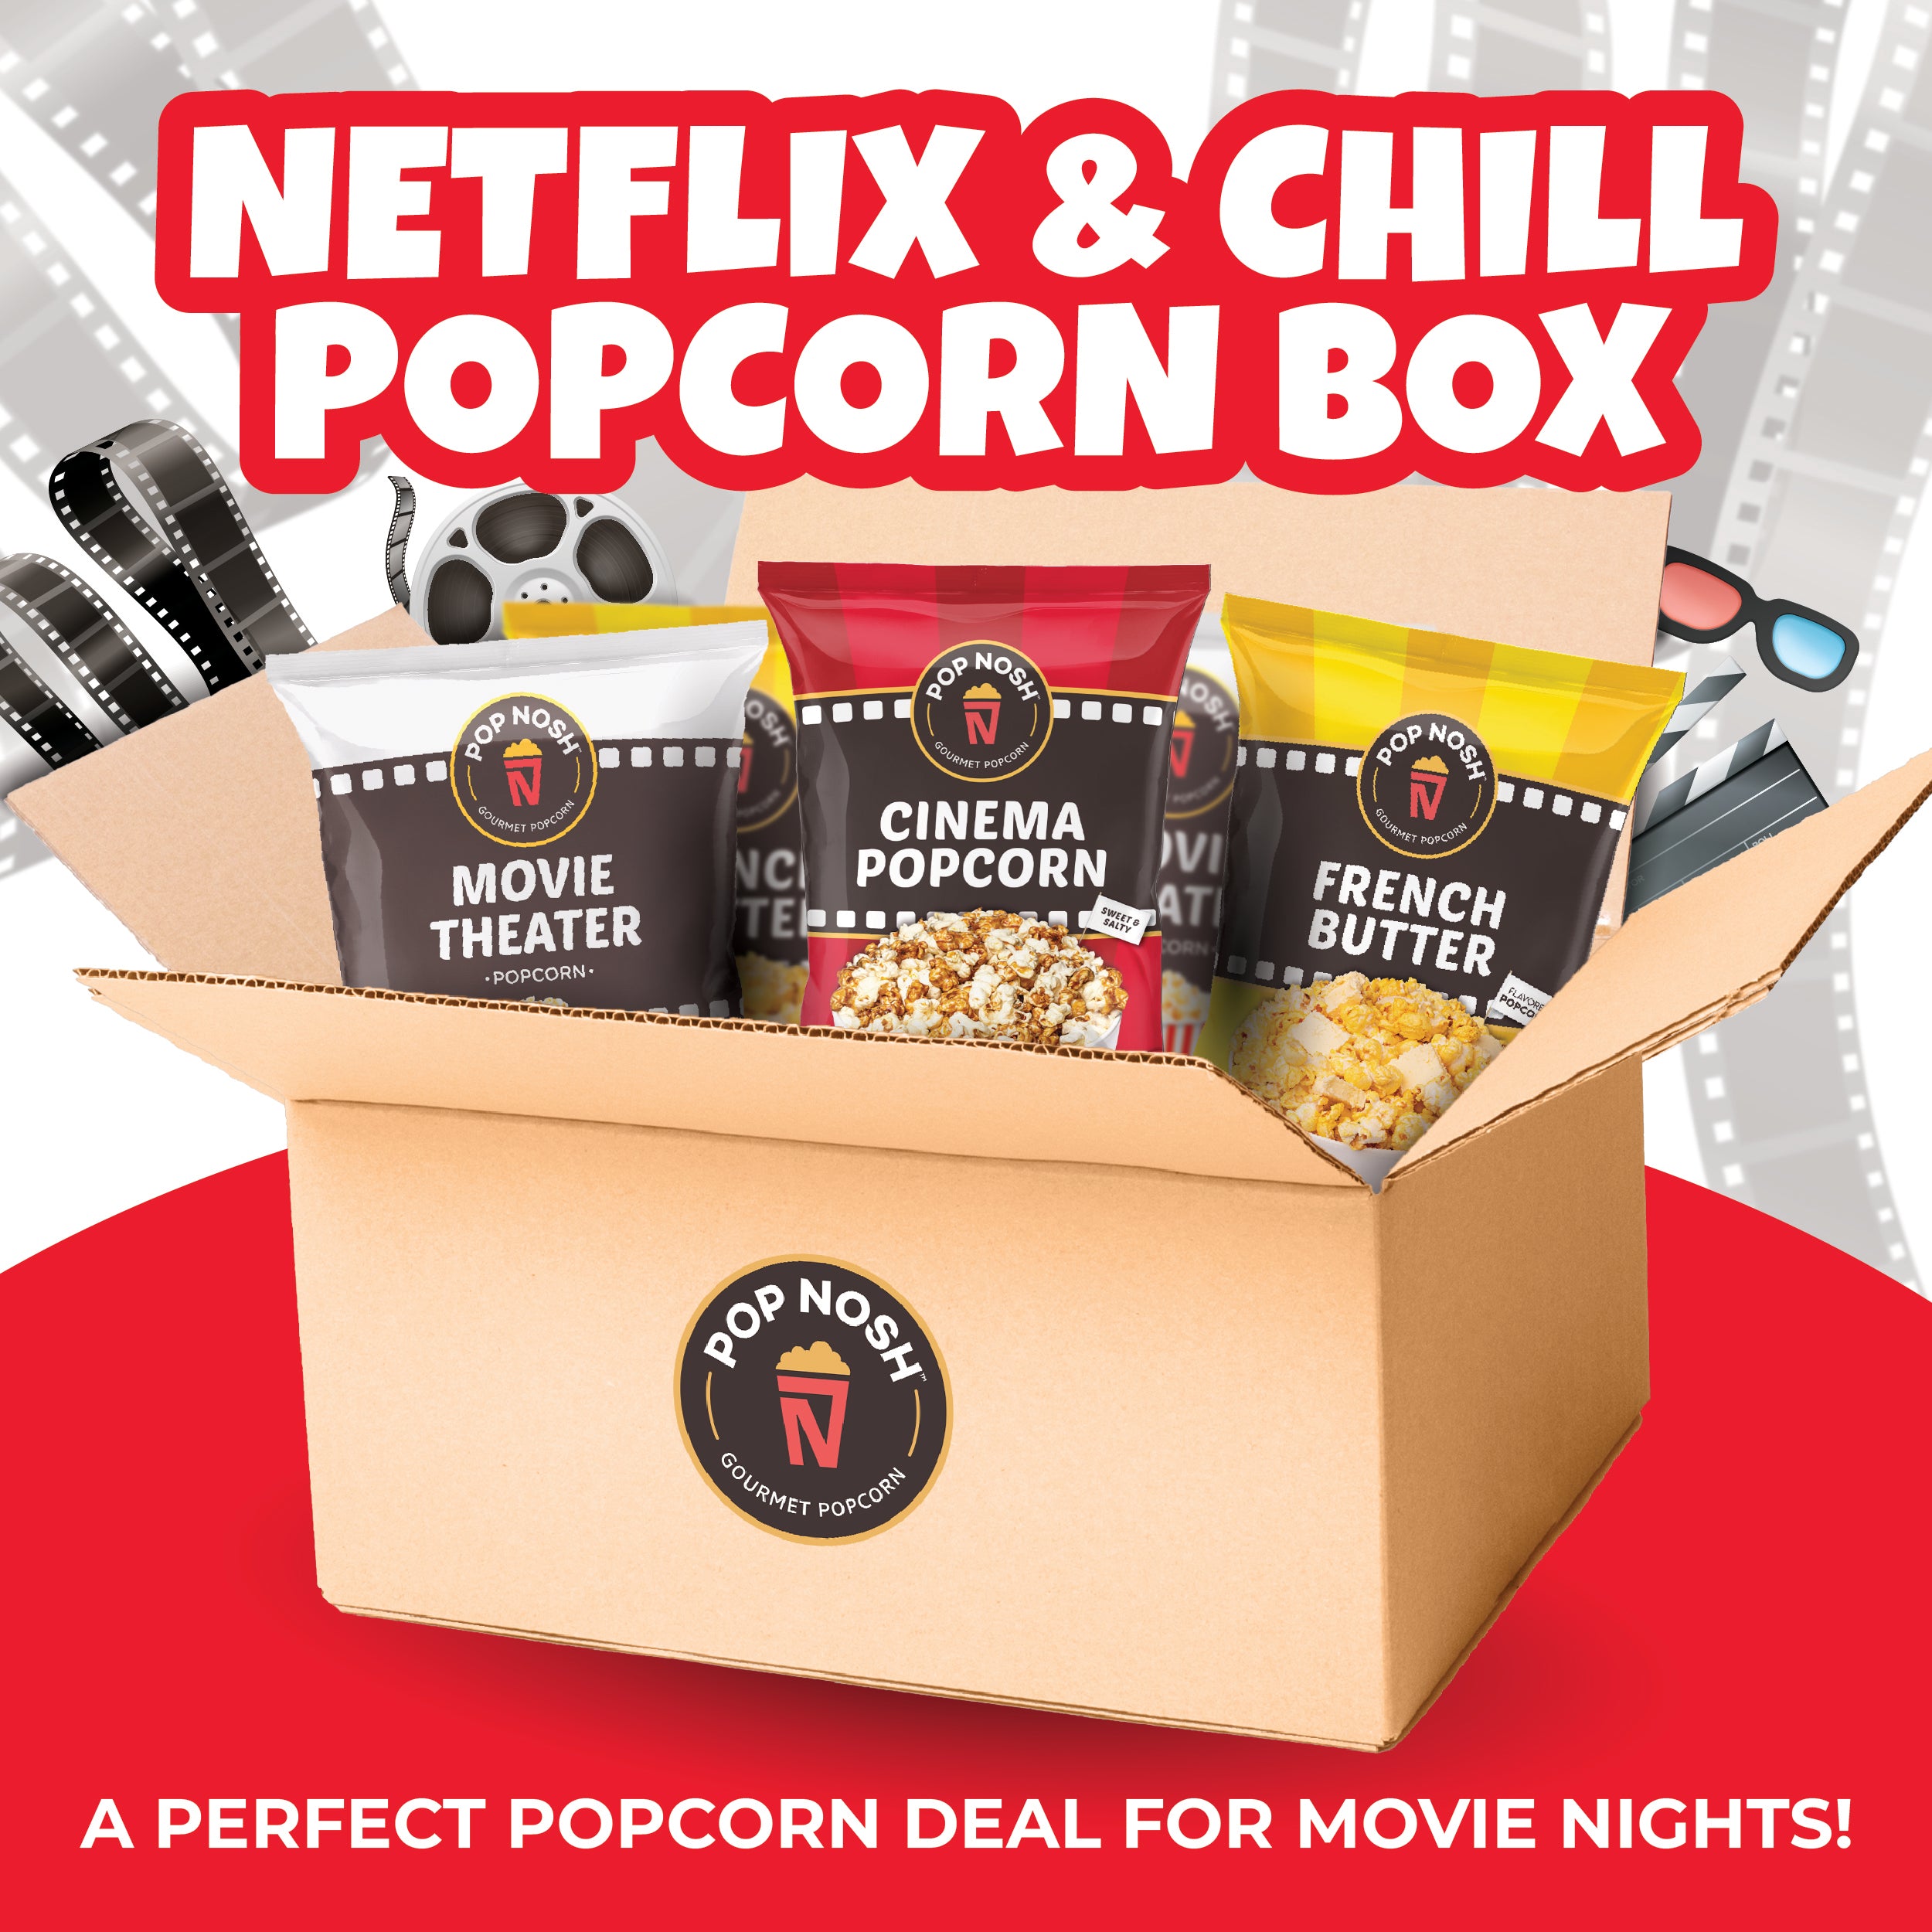 Netflix & Chill Popcorn Box